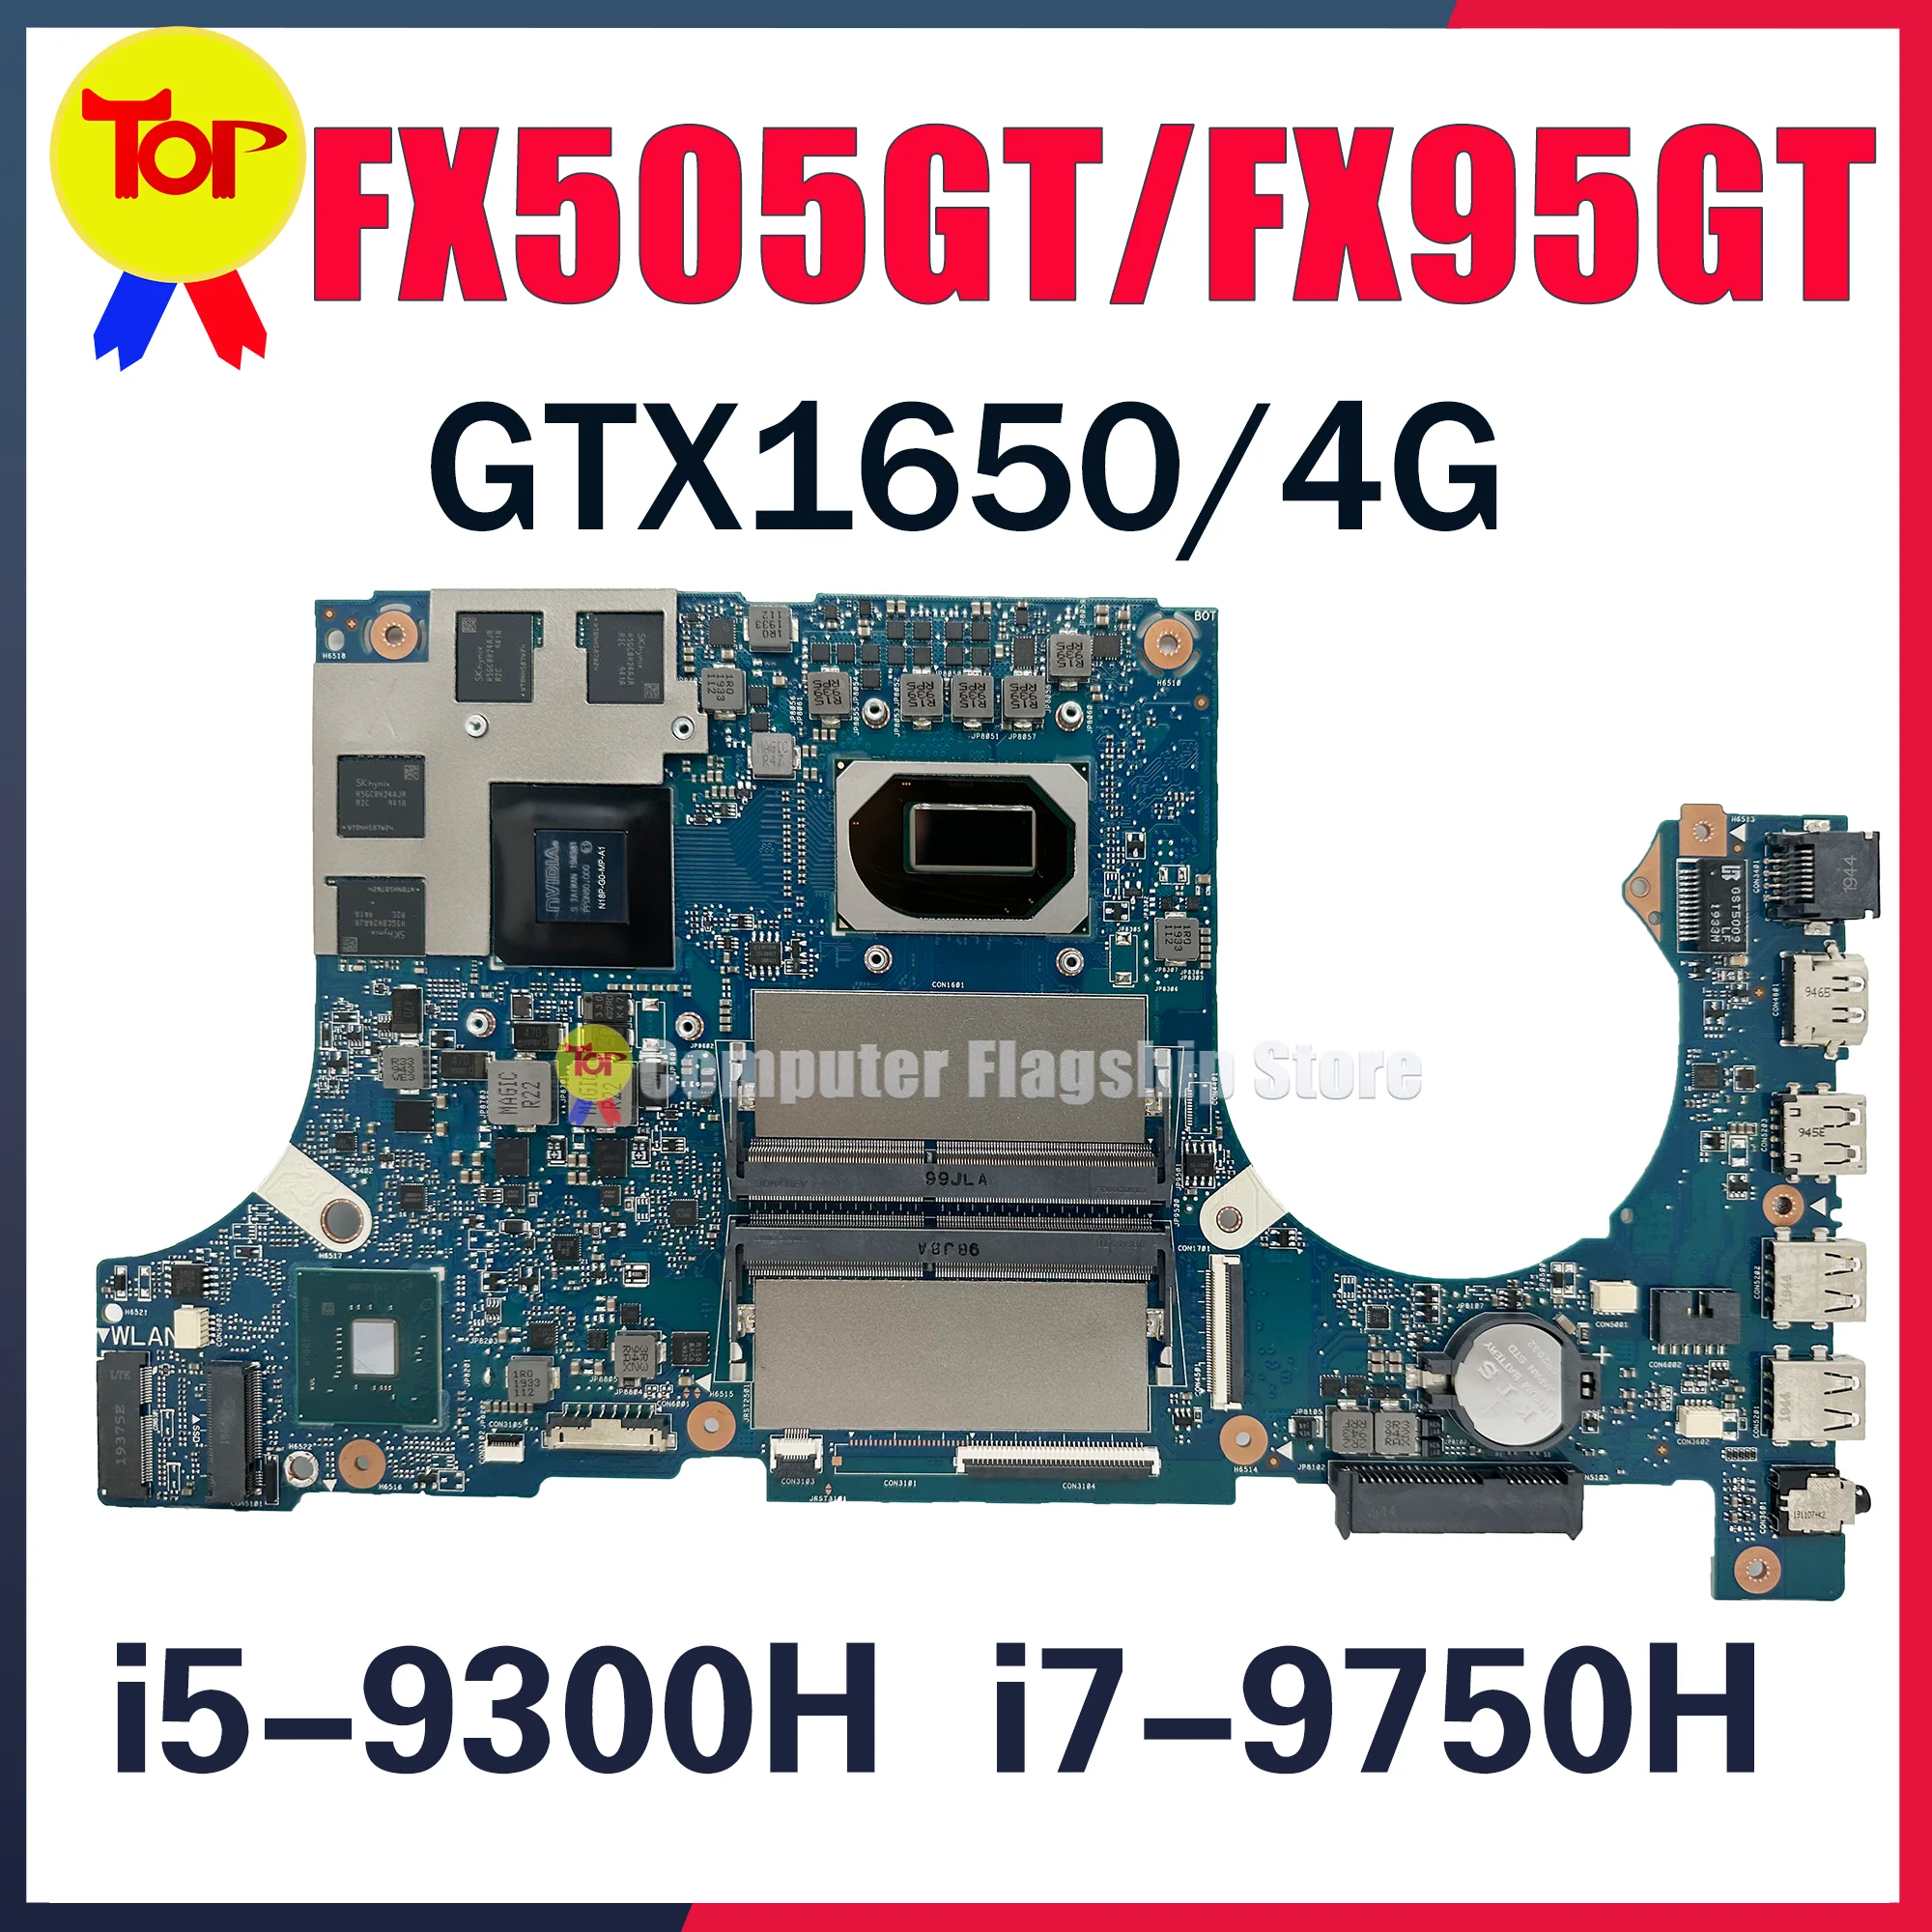 Ƽ TUF ӿ FX505GT κ, FX505G FX505GT FX95GT Ʈ , I5-9300H I7-9750H CPU GTX1650 V4G